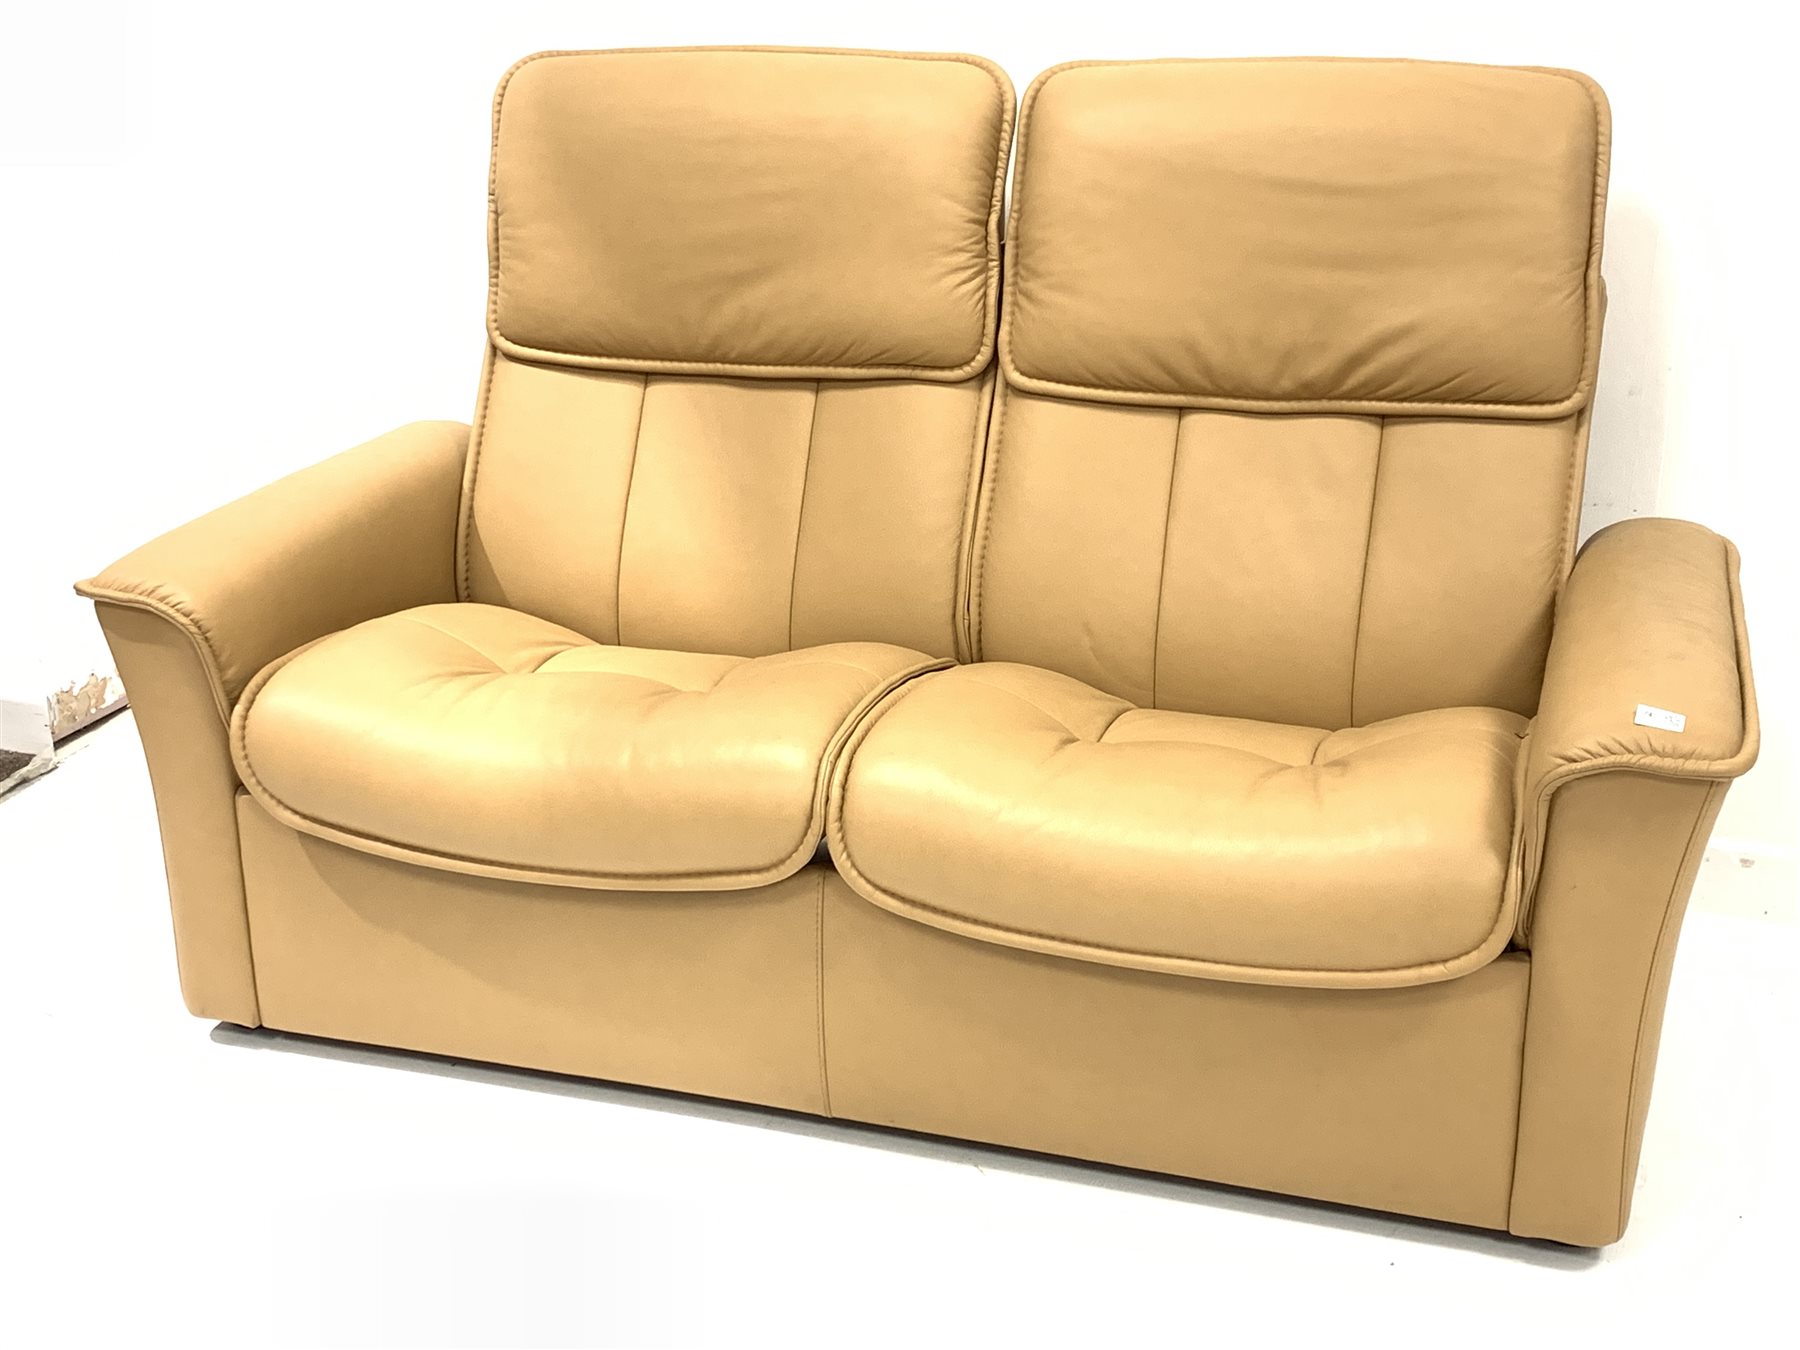 tan leather reclining sofa